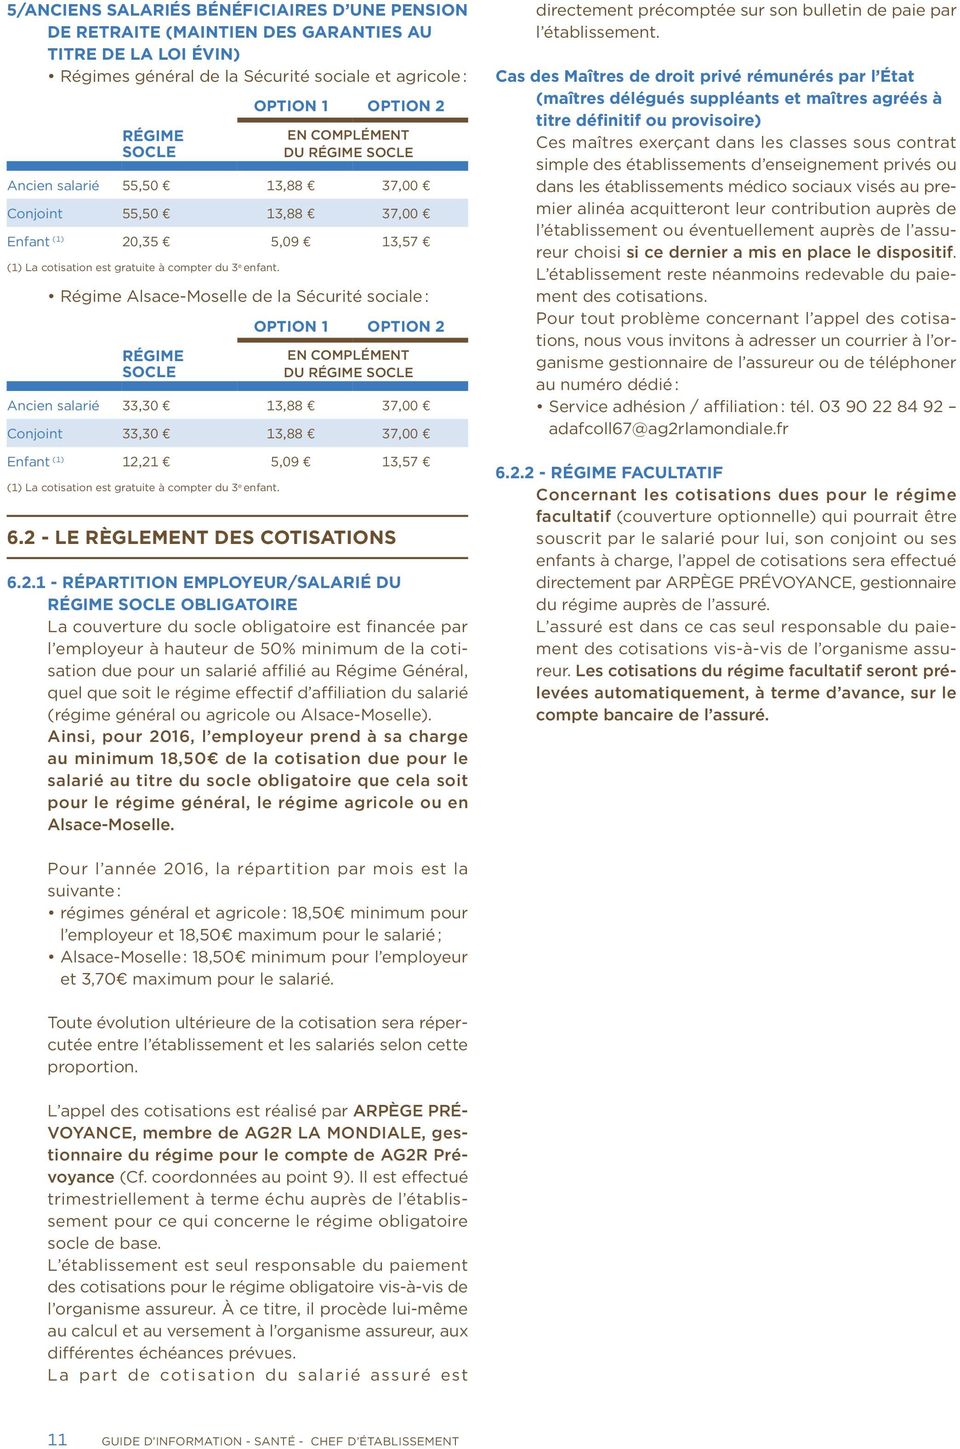 Régime Alsace-Moselle de la Sécurité sociale : RÉGIME SOCLE OPTION 1 OPTION 2 EN COMPLÉMENT DU RÉGIME SOCLE Ancien salarié 33,30 13,88 37,00 Conjoint 33,30 13,88 37,00 Enfant (1) 12,21 5,09 13,57 (1)